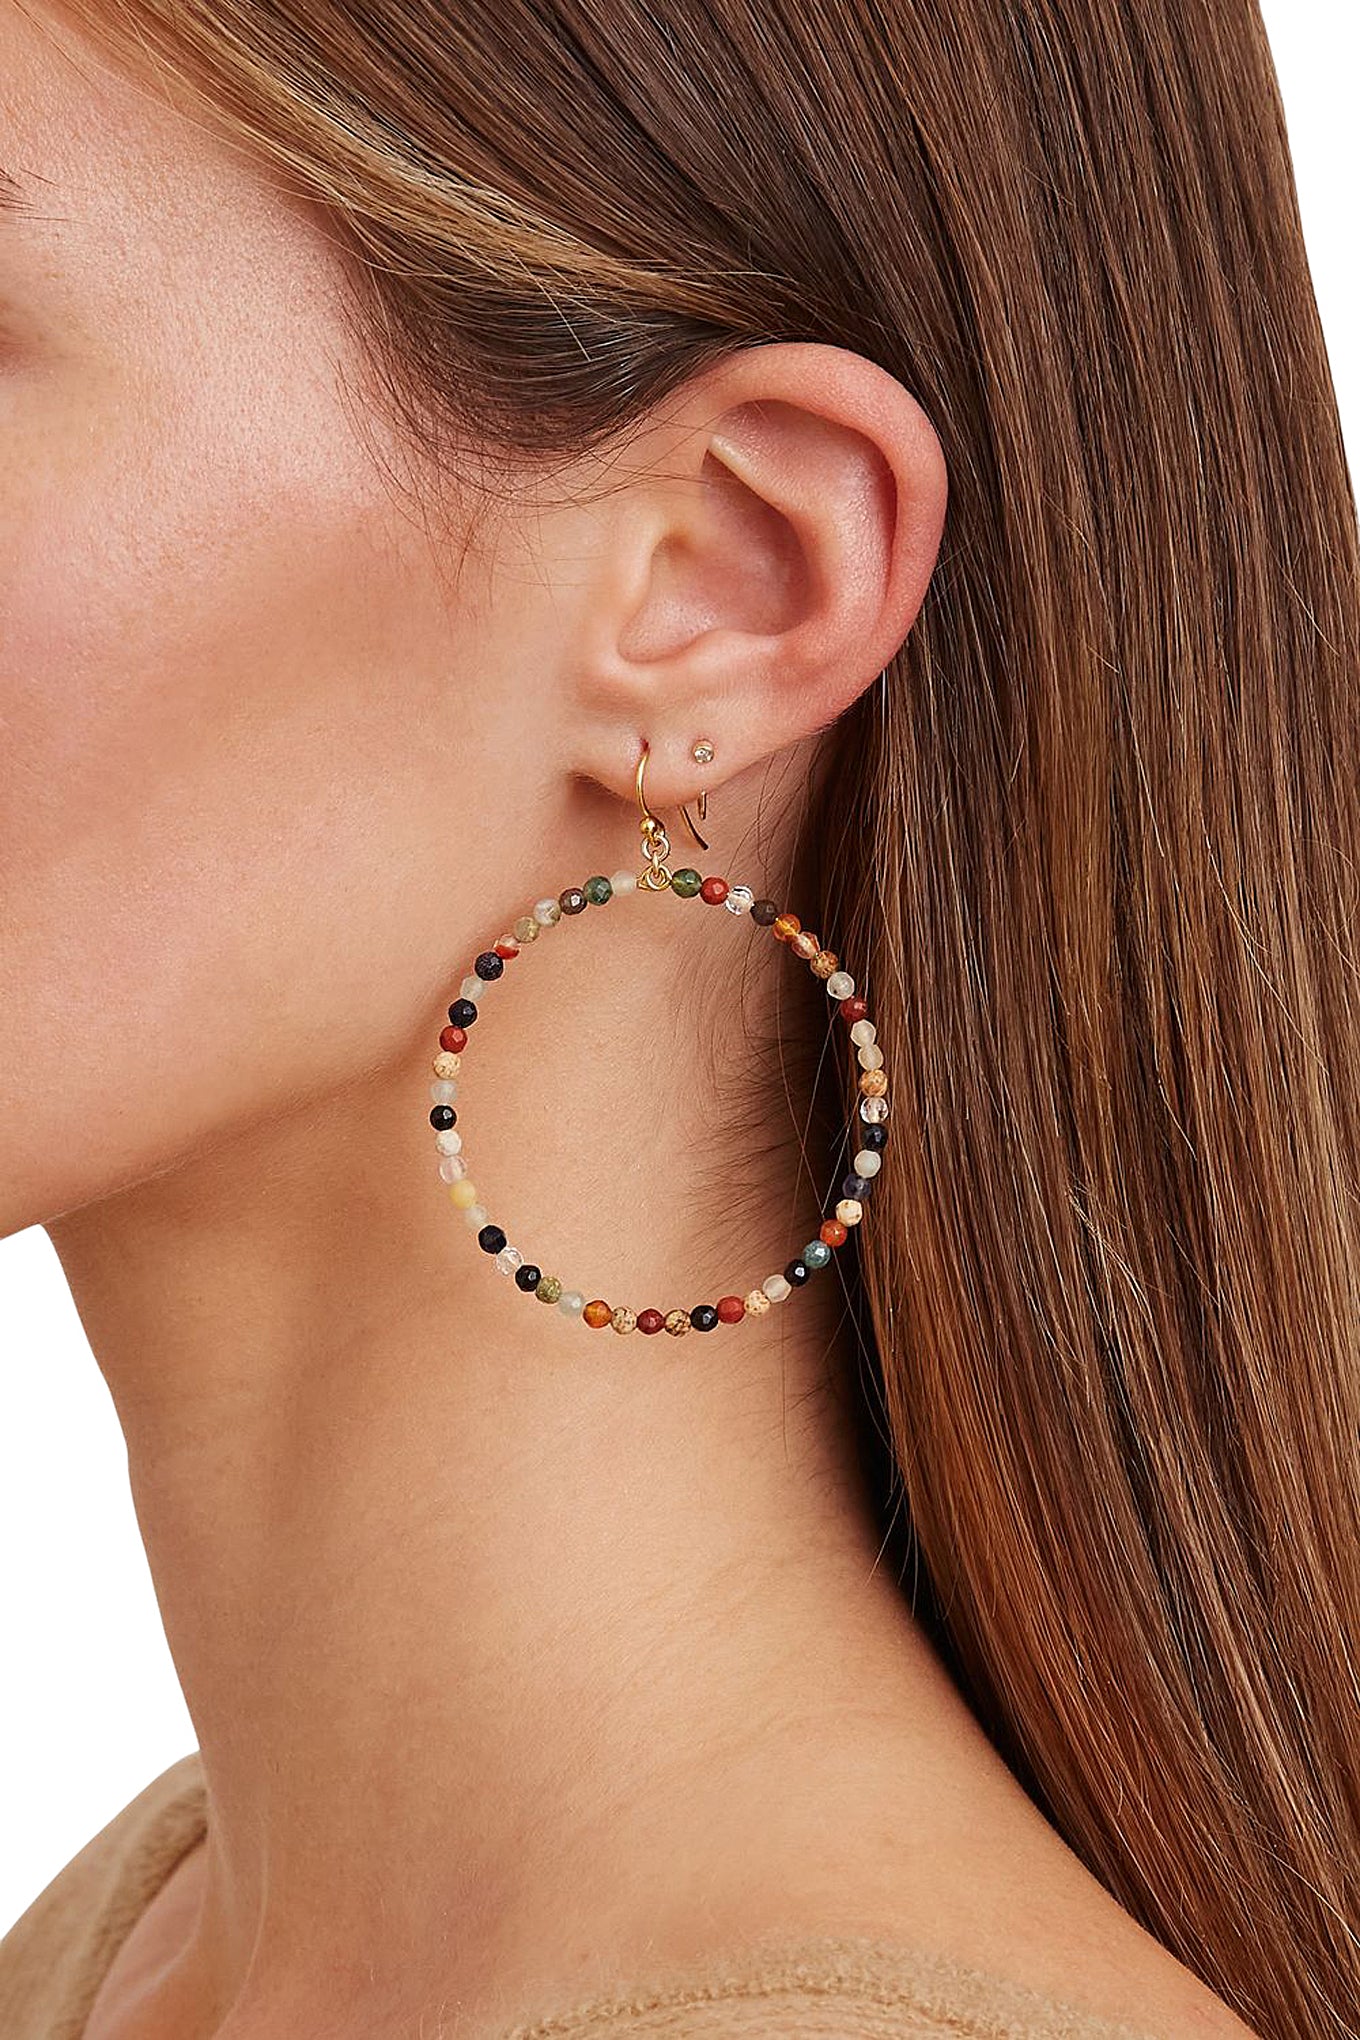 Chan Luu 2 Inch Gold Hoop Earrings in Multicolor Stones